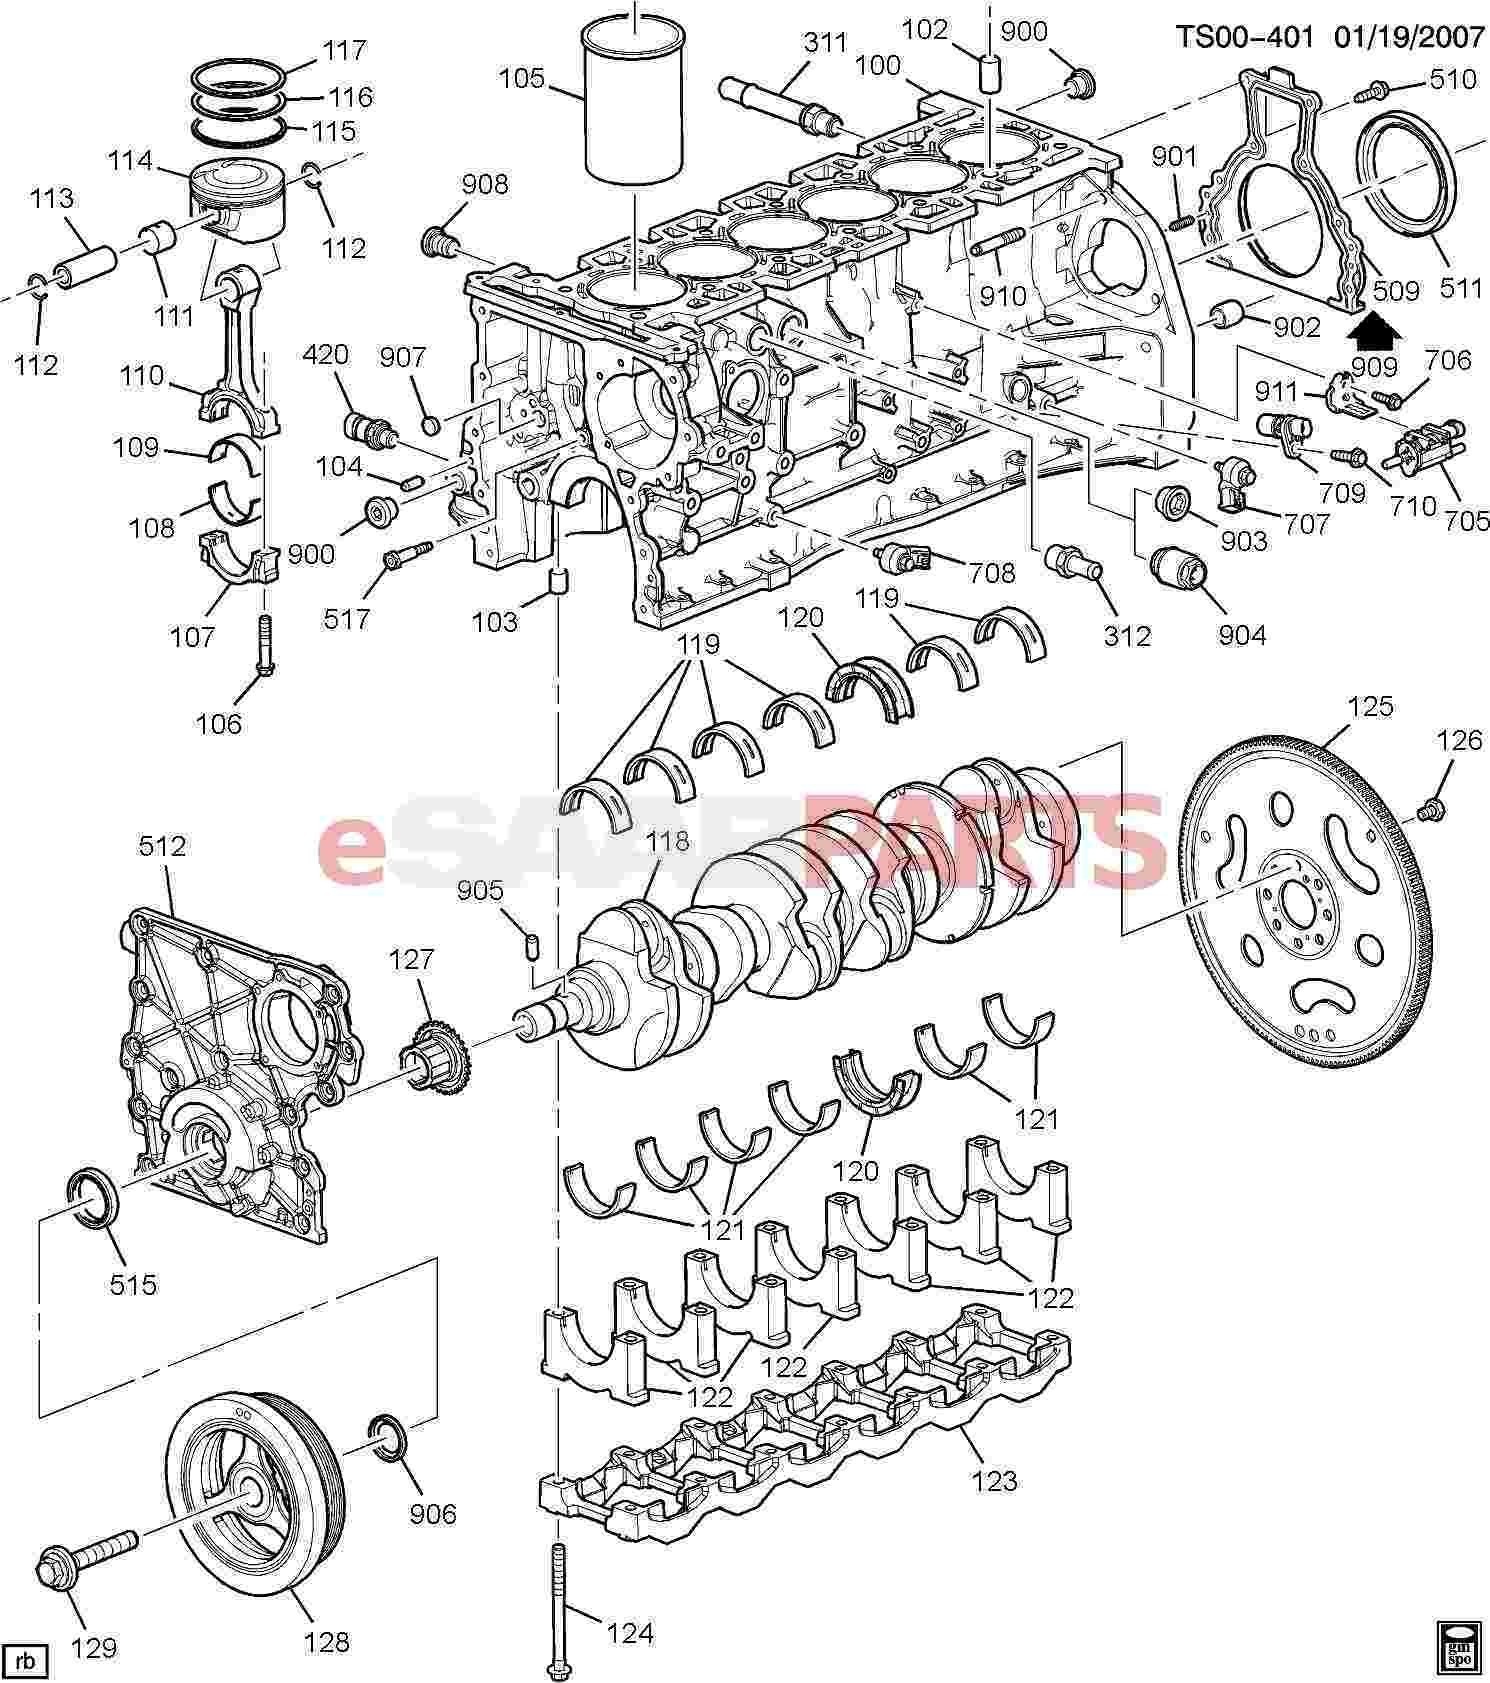 Engine Parts Diagram Car Parts Labeled Diagram